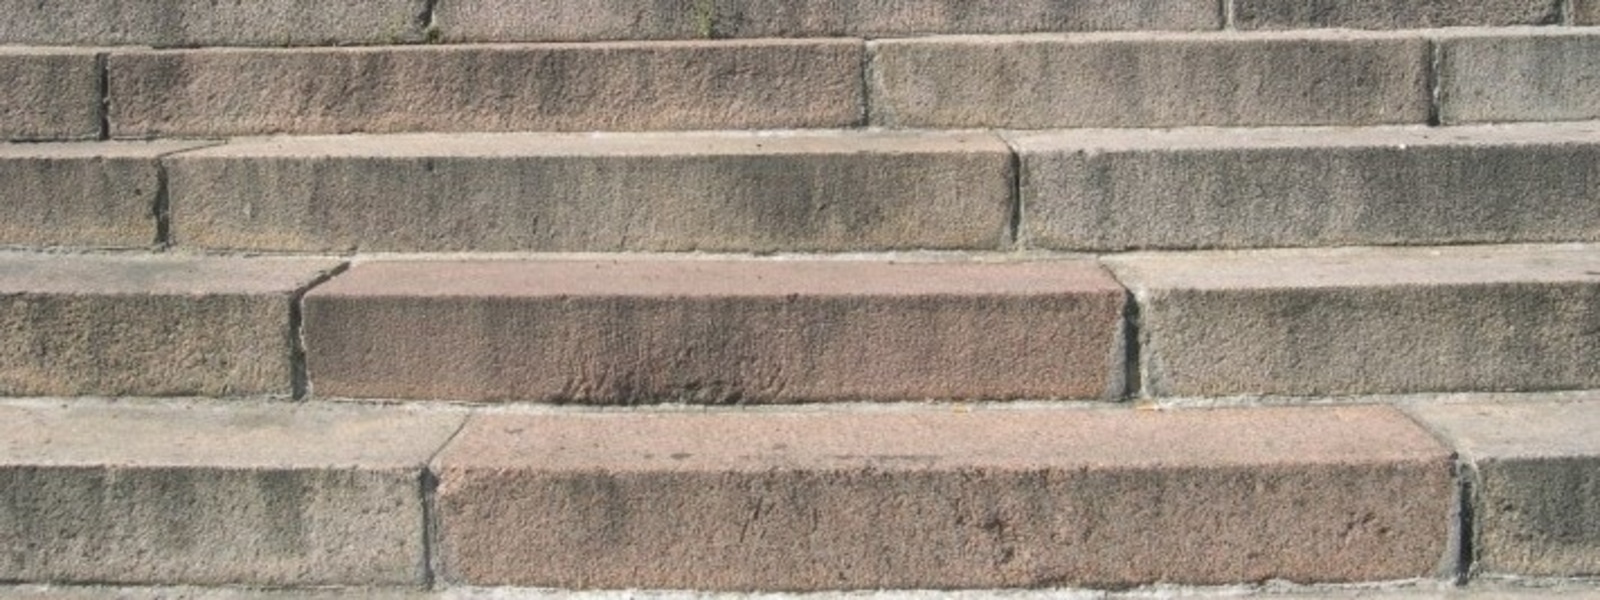 Steps image